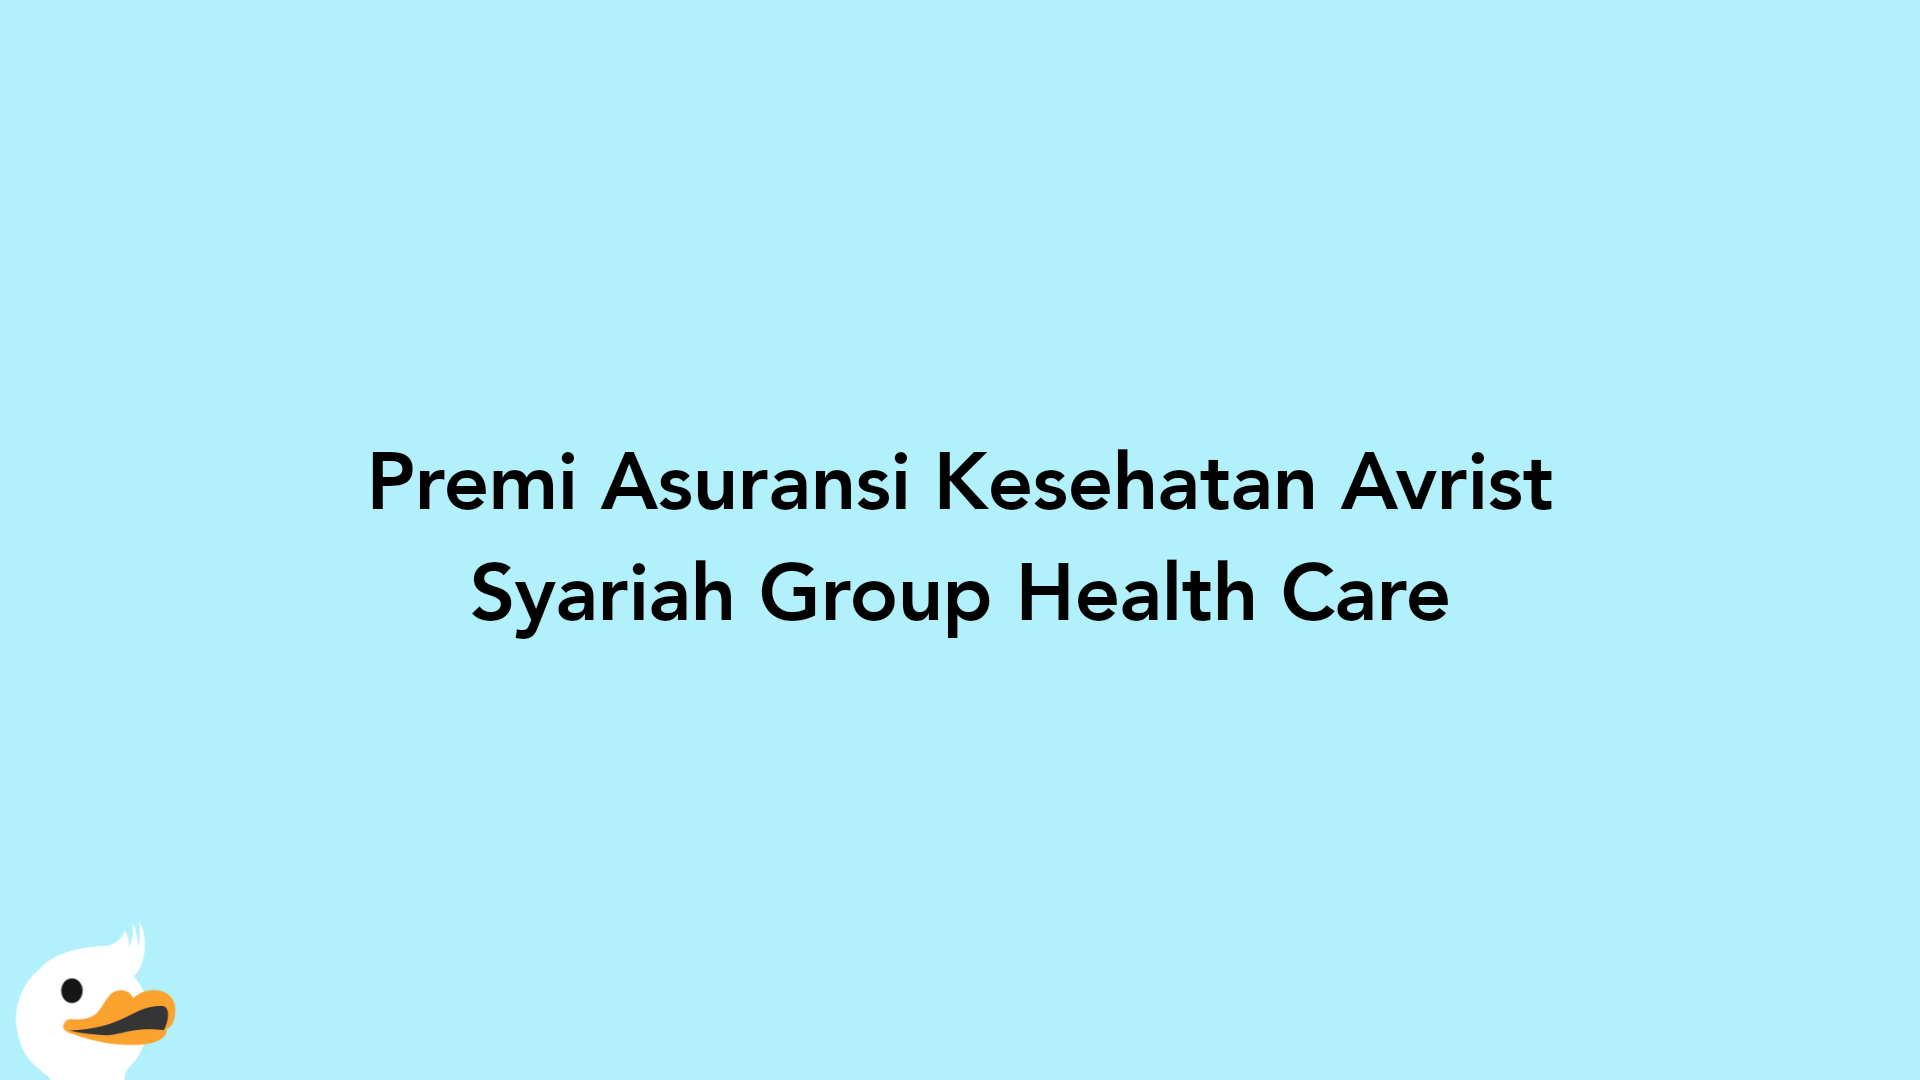 Premi Asuransi Kesehatan Avrist Syariah Group Health Care